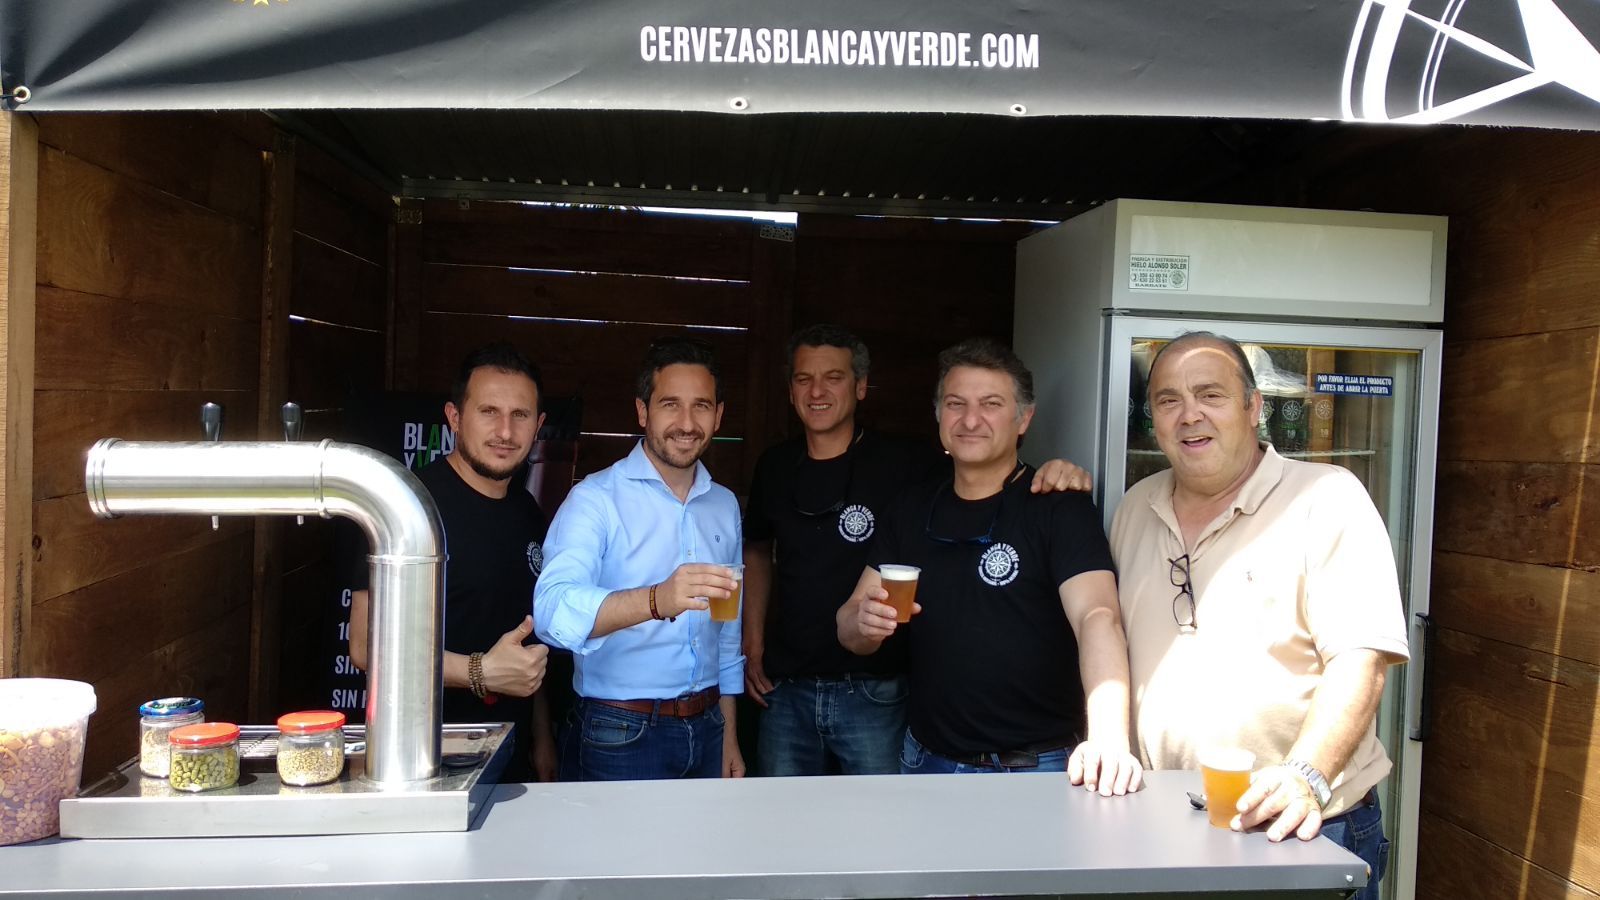 José Manuel Vera junto a los responsables de la organización, Guillermo Periñán y Paco Flor, y los representantes de las diferentes cervezas.